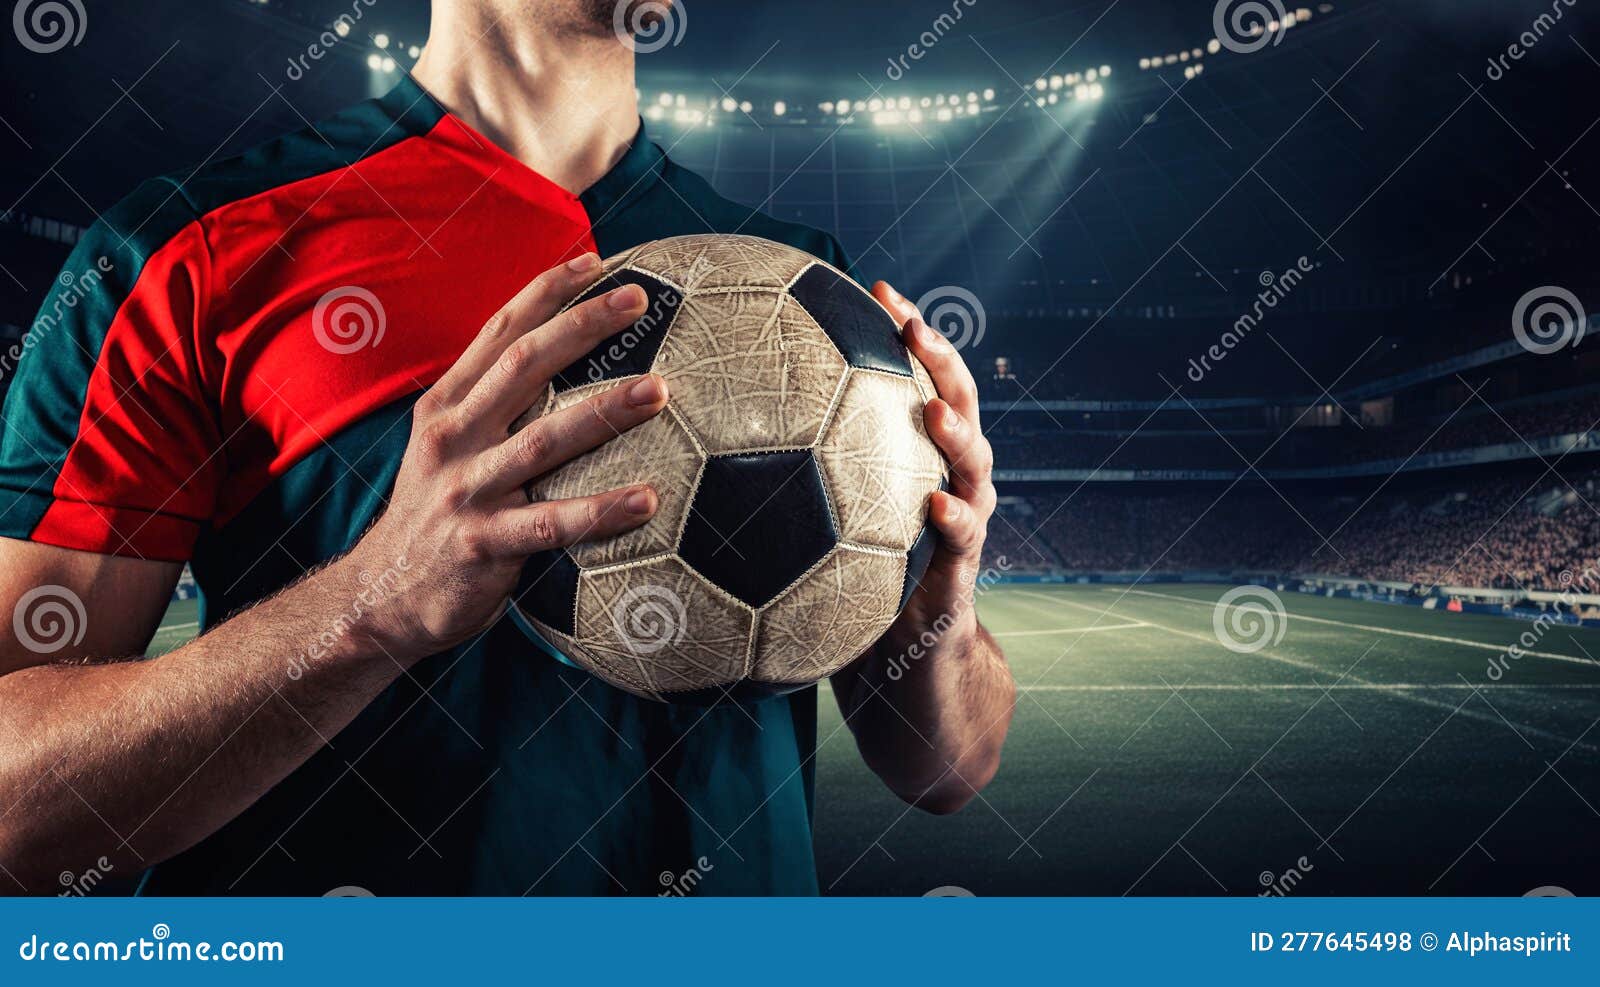 jogador de futebol e jogador de futebol segurando bola no estádio